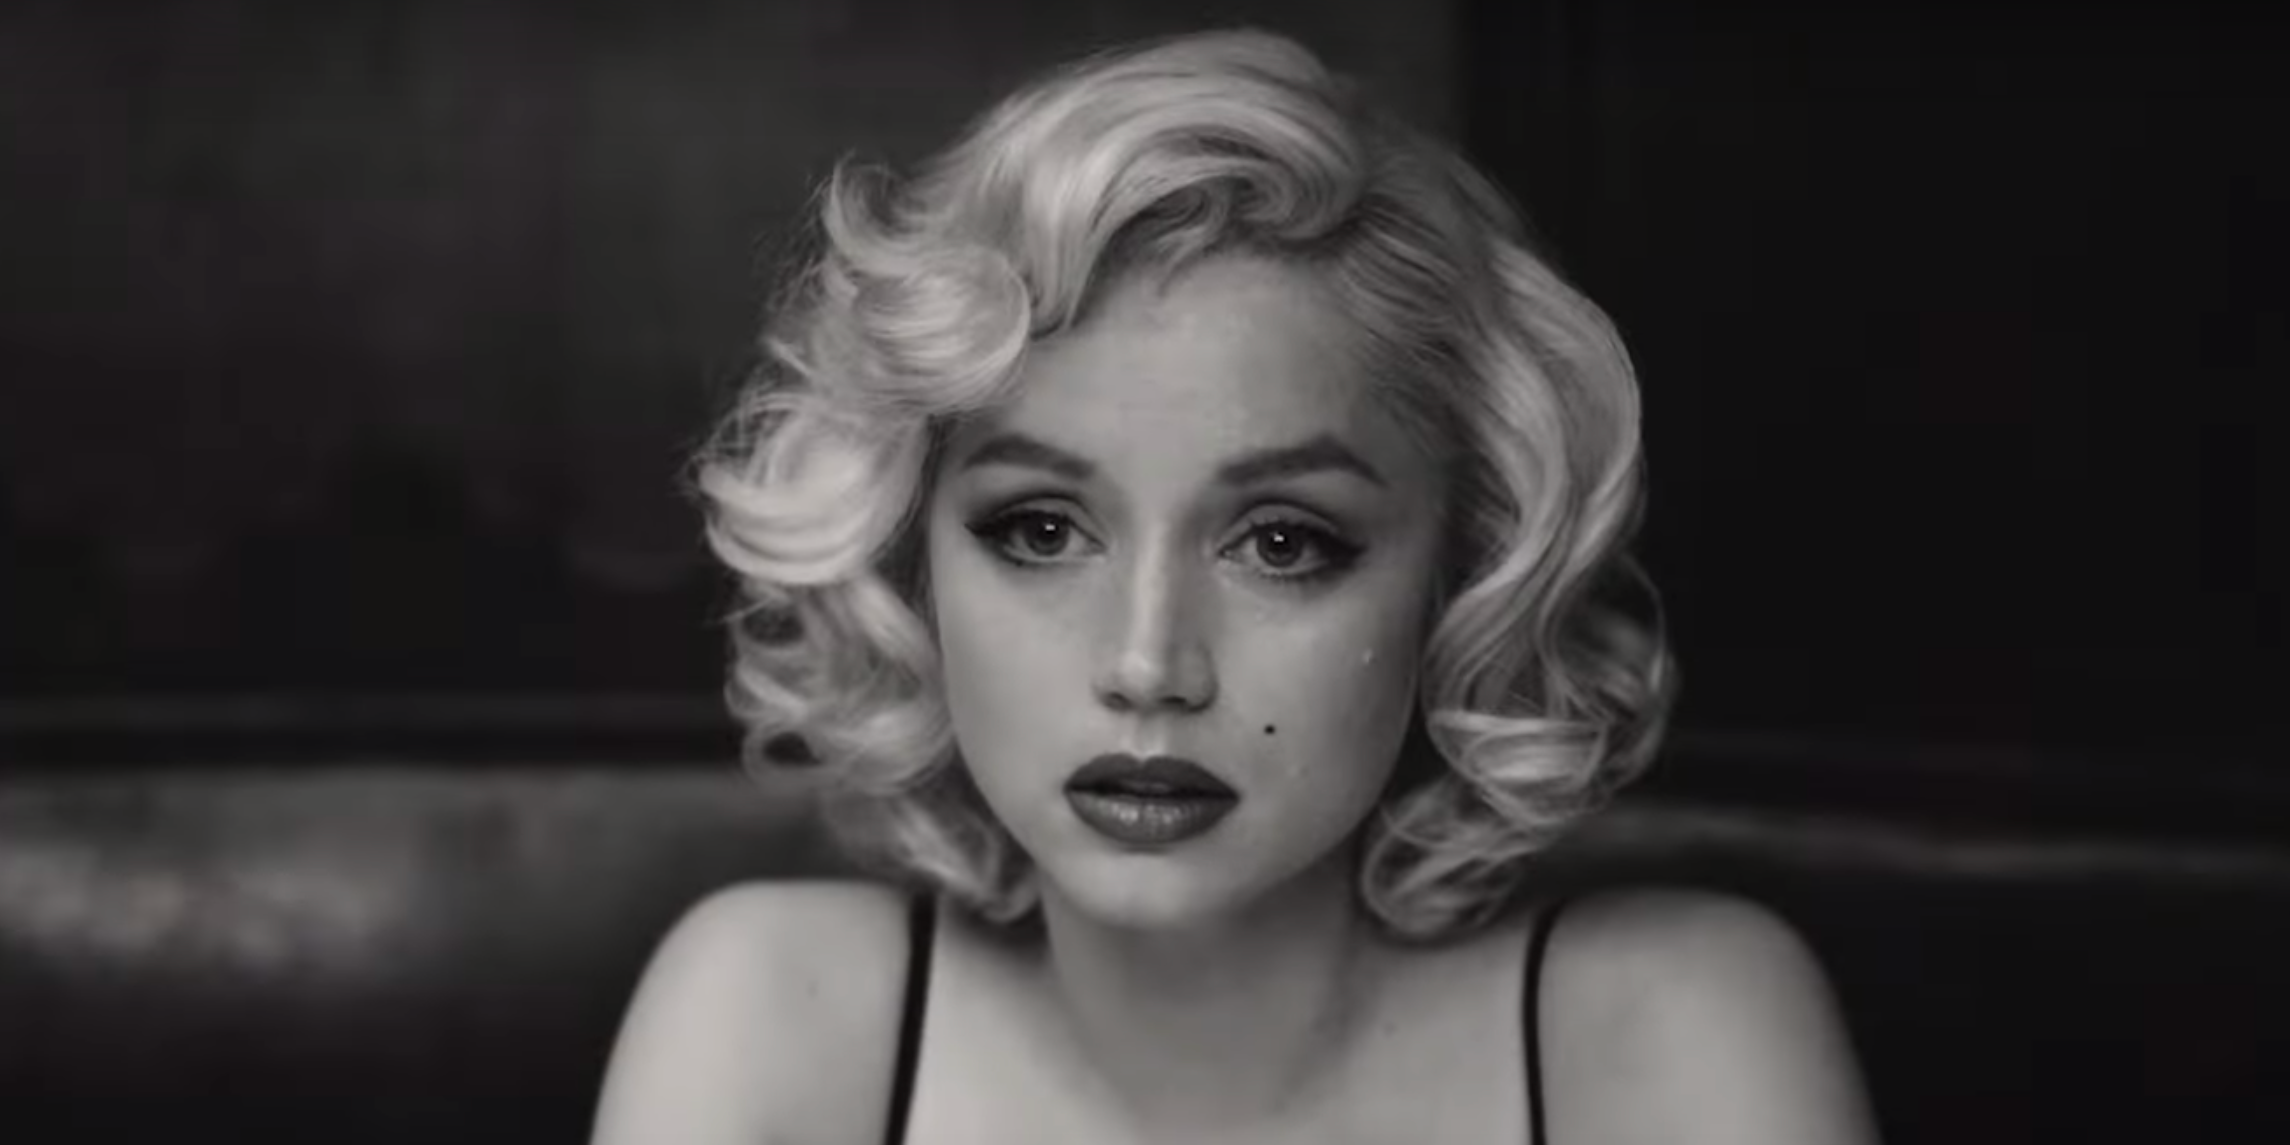 Marilyn ziet er verdrietig uit als een blondine